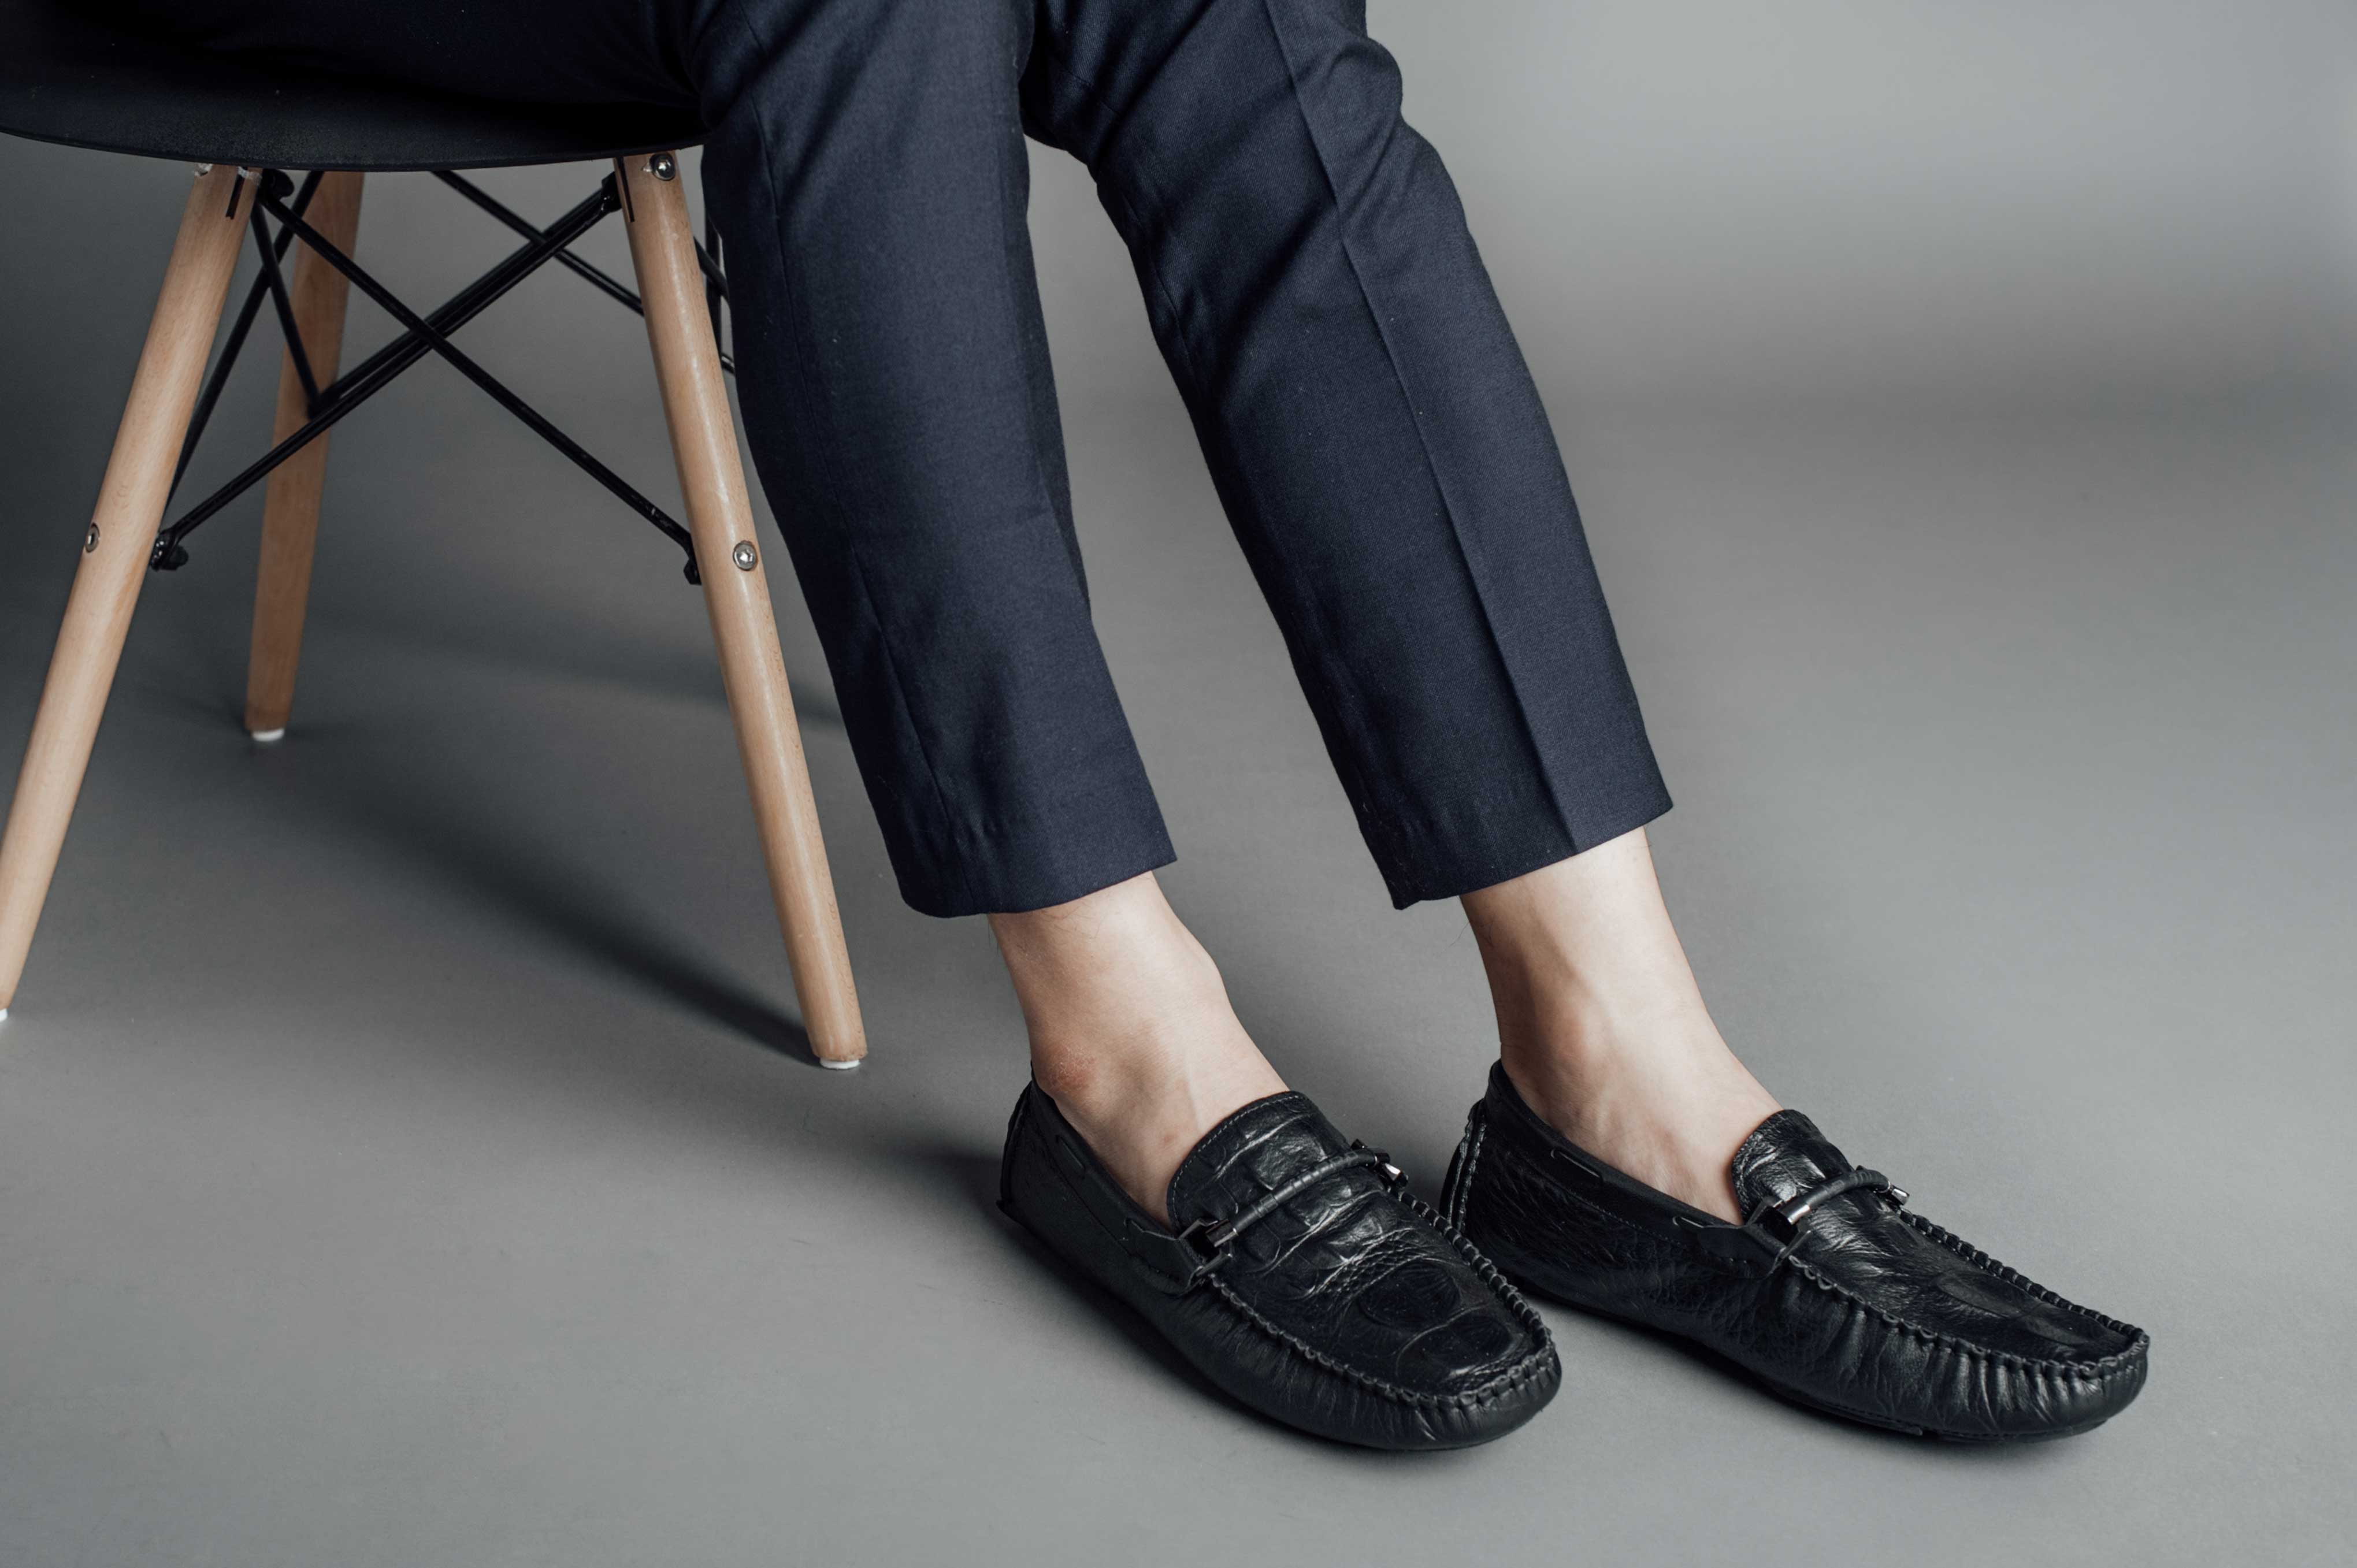 Bí quyết chọn giày chuẩn của chàng công sở - Gianni Conti